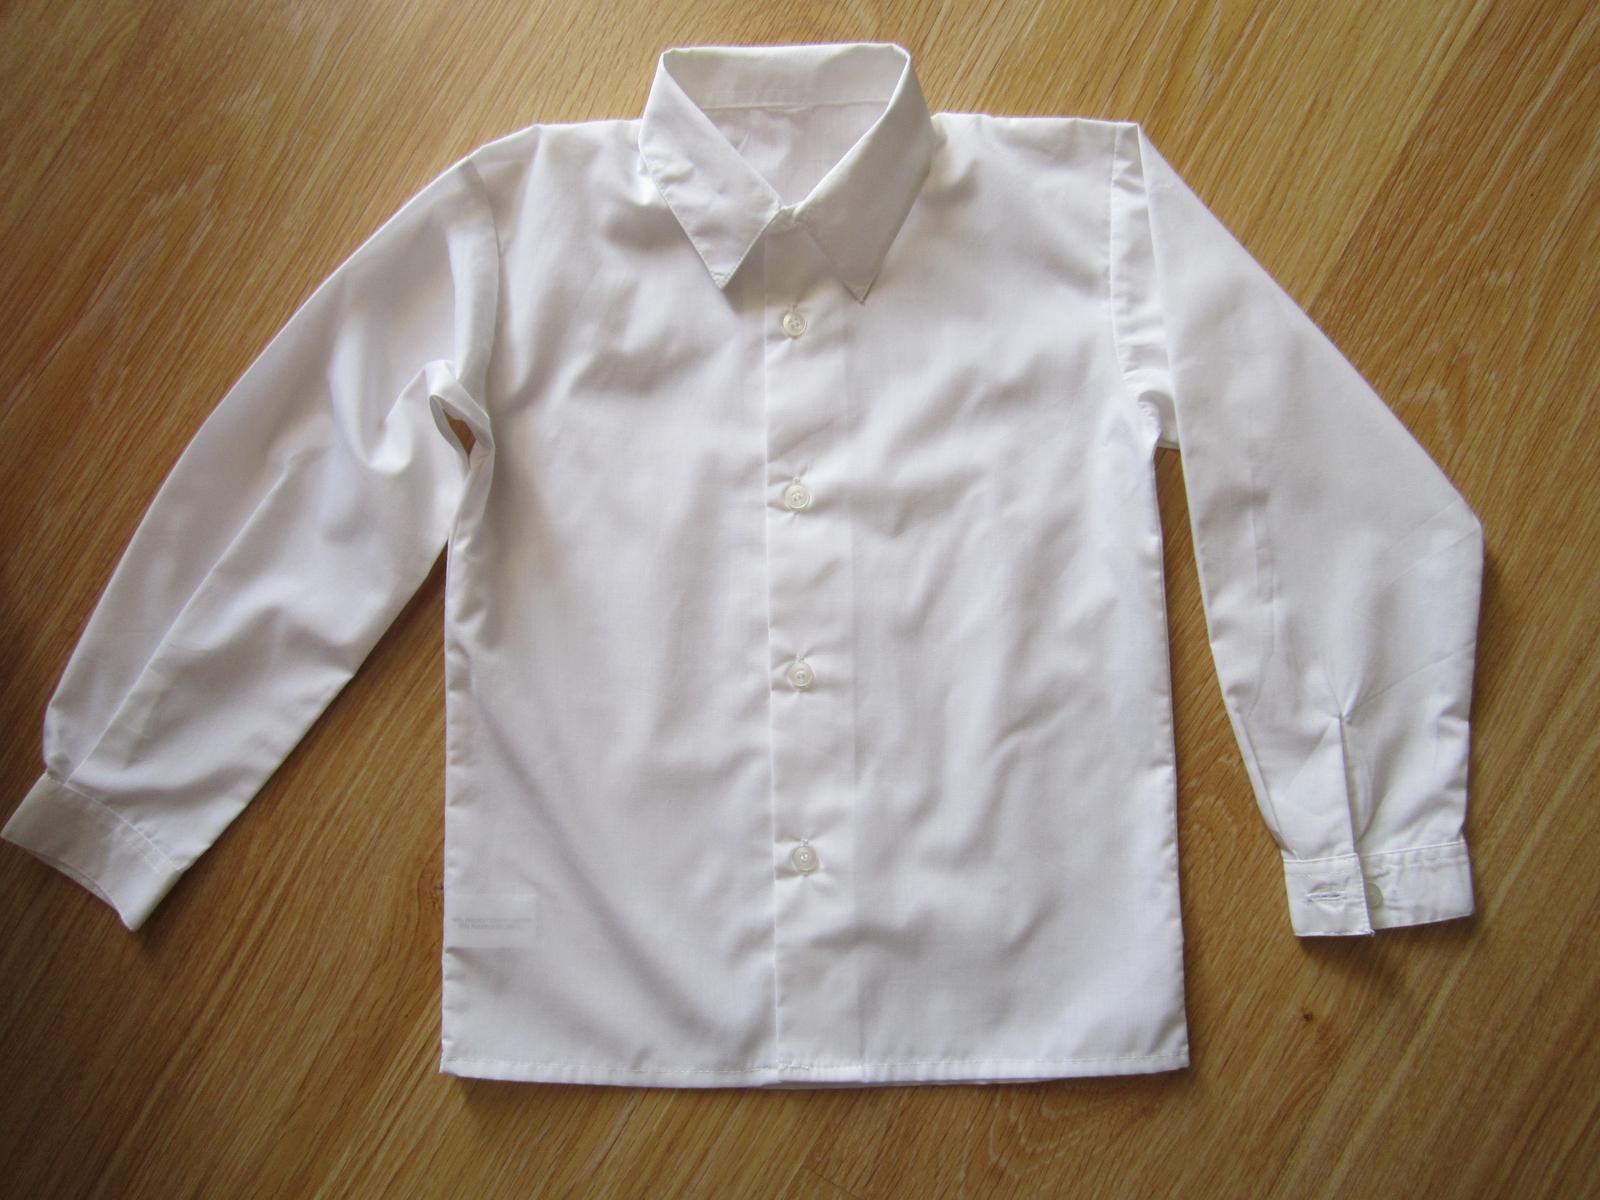 biela košeľa - Obrázok č. 1